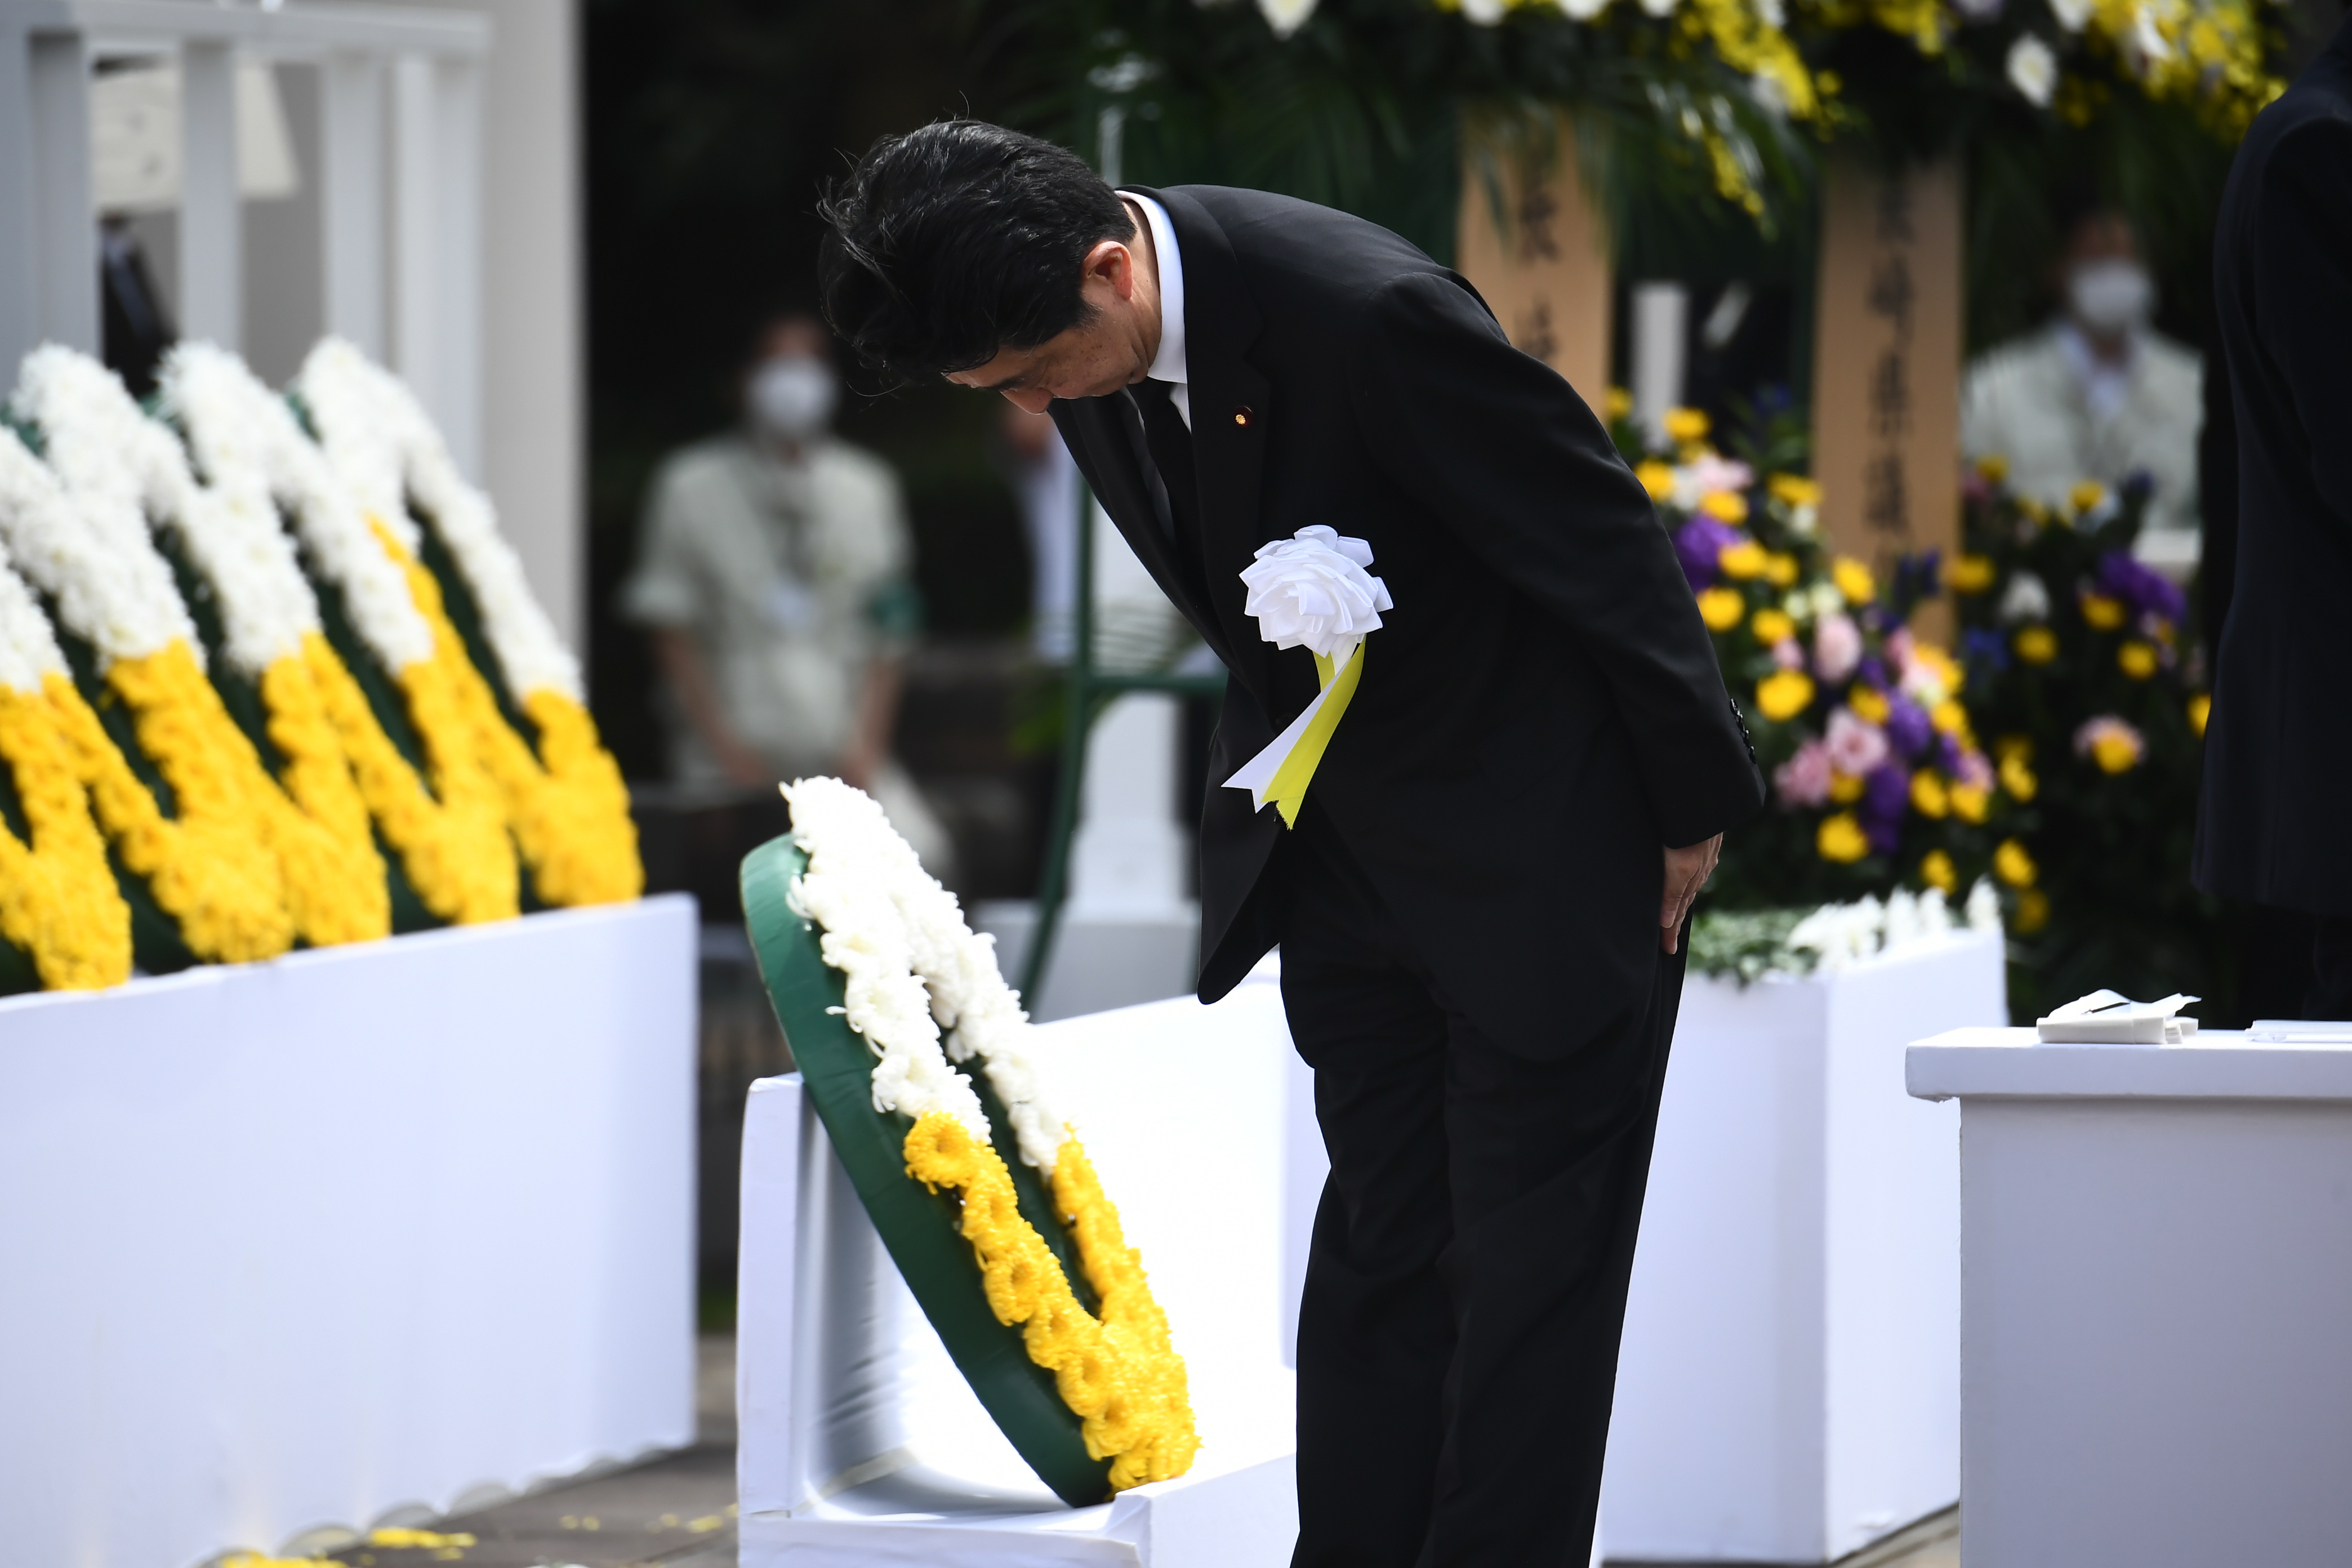 EN DETALLES: Todo lo que se sabe del magnicidio del ex primer ministro japonés Shinzo Abe